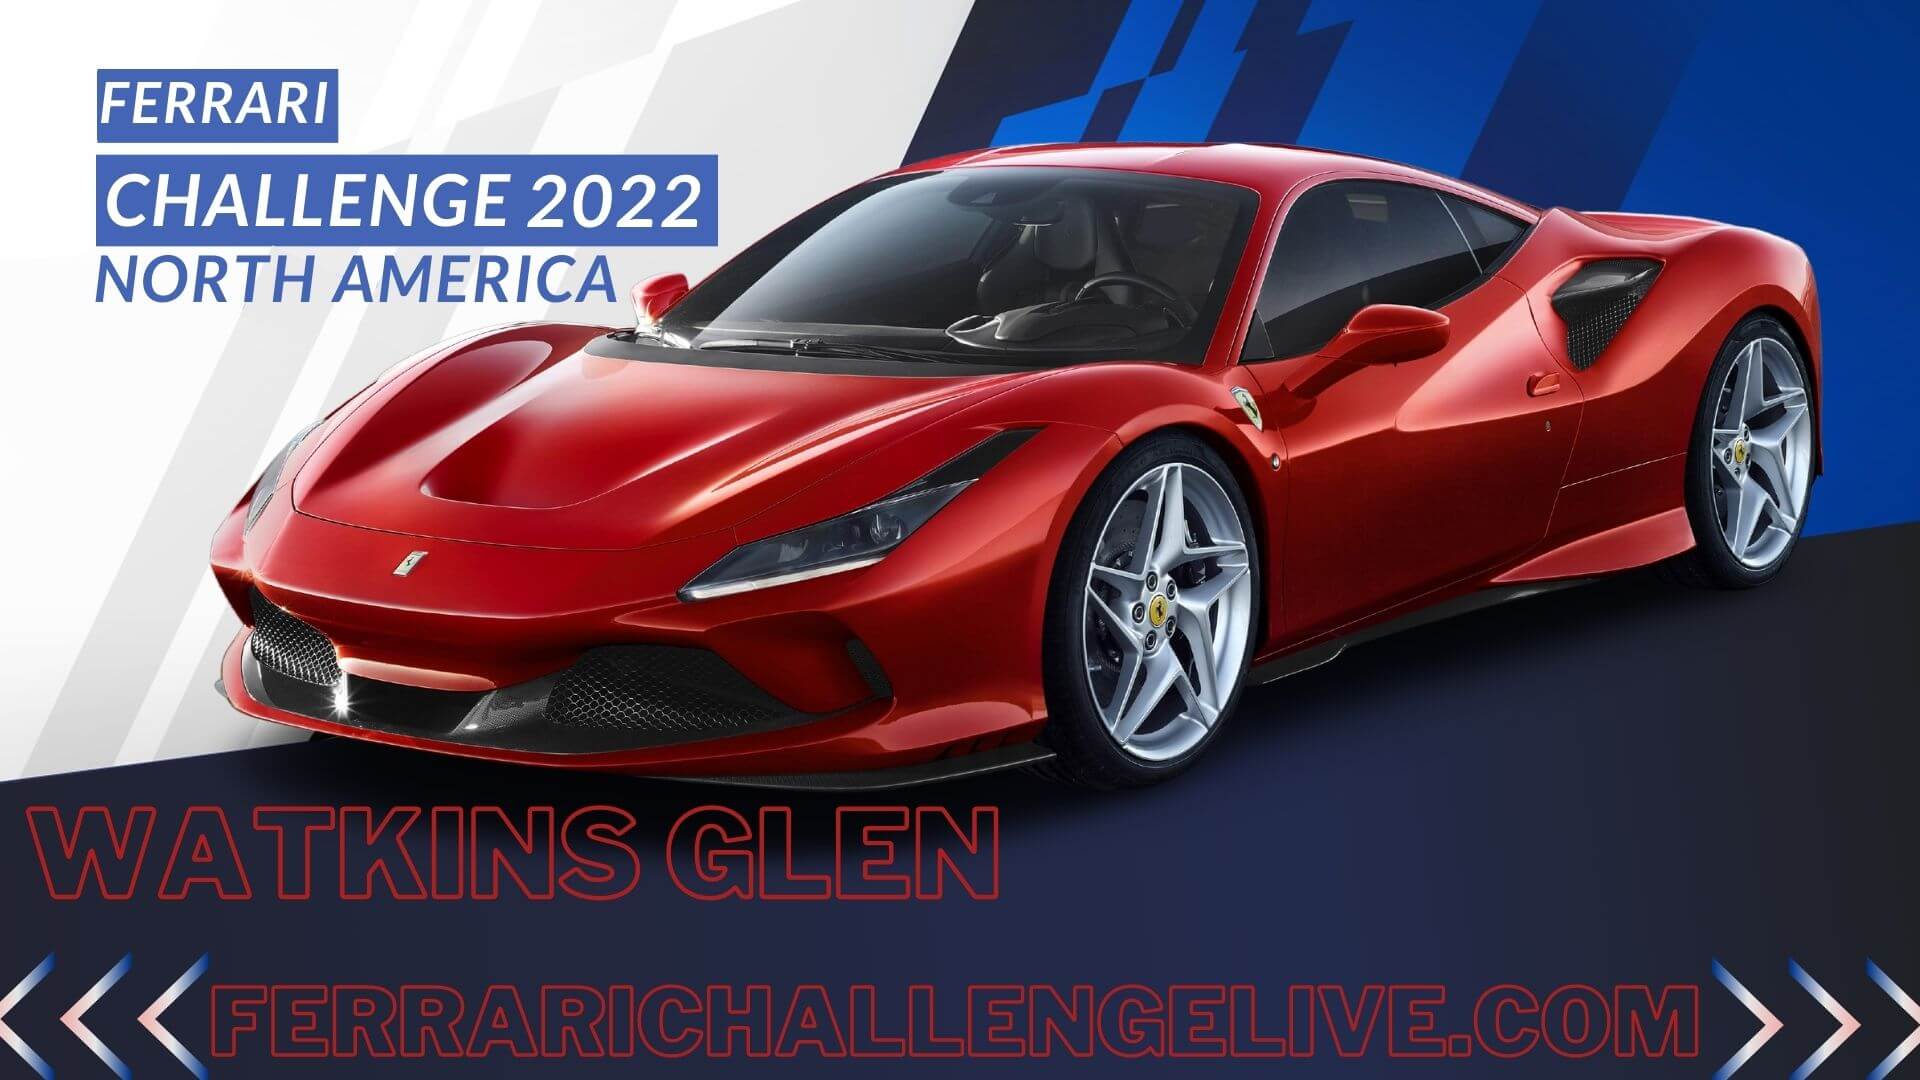 Watkins Glen Ferrari Challenge Live Stream